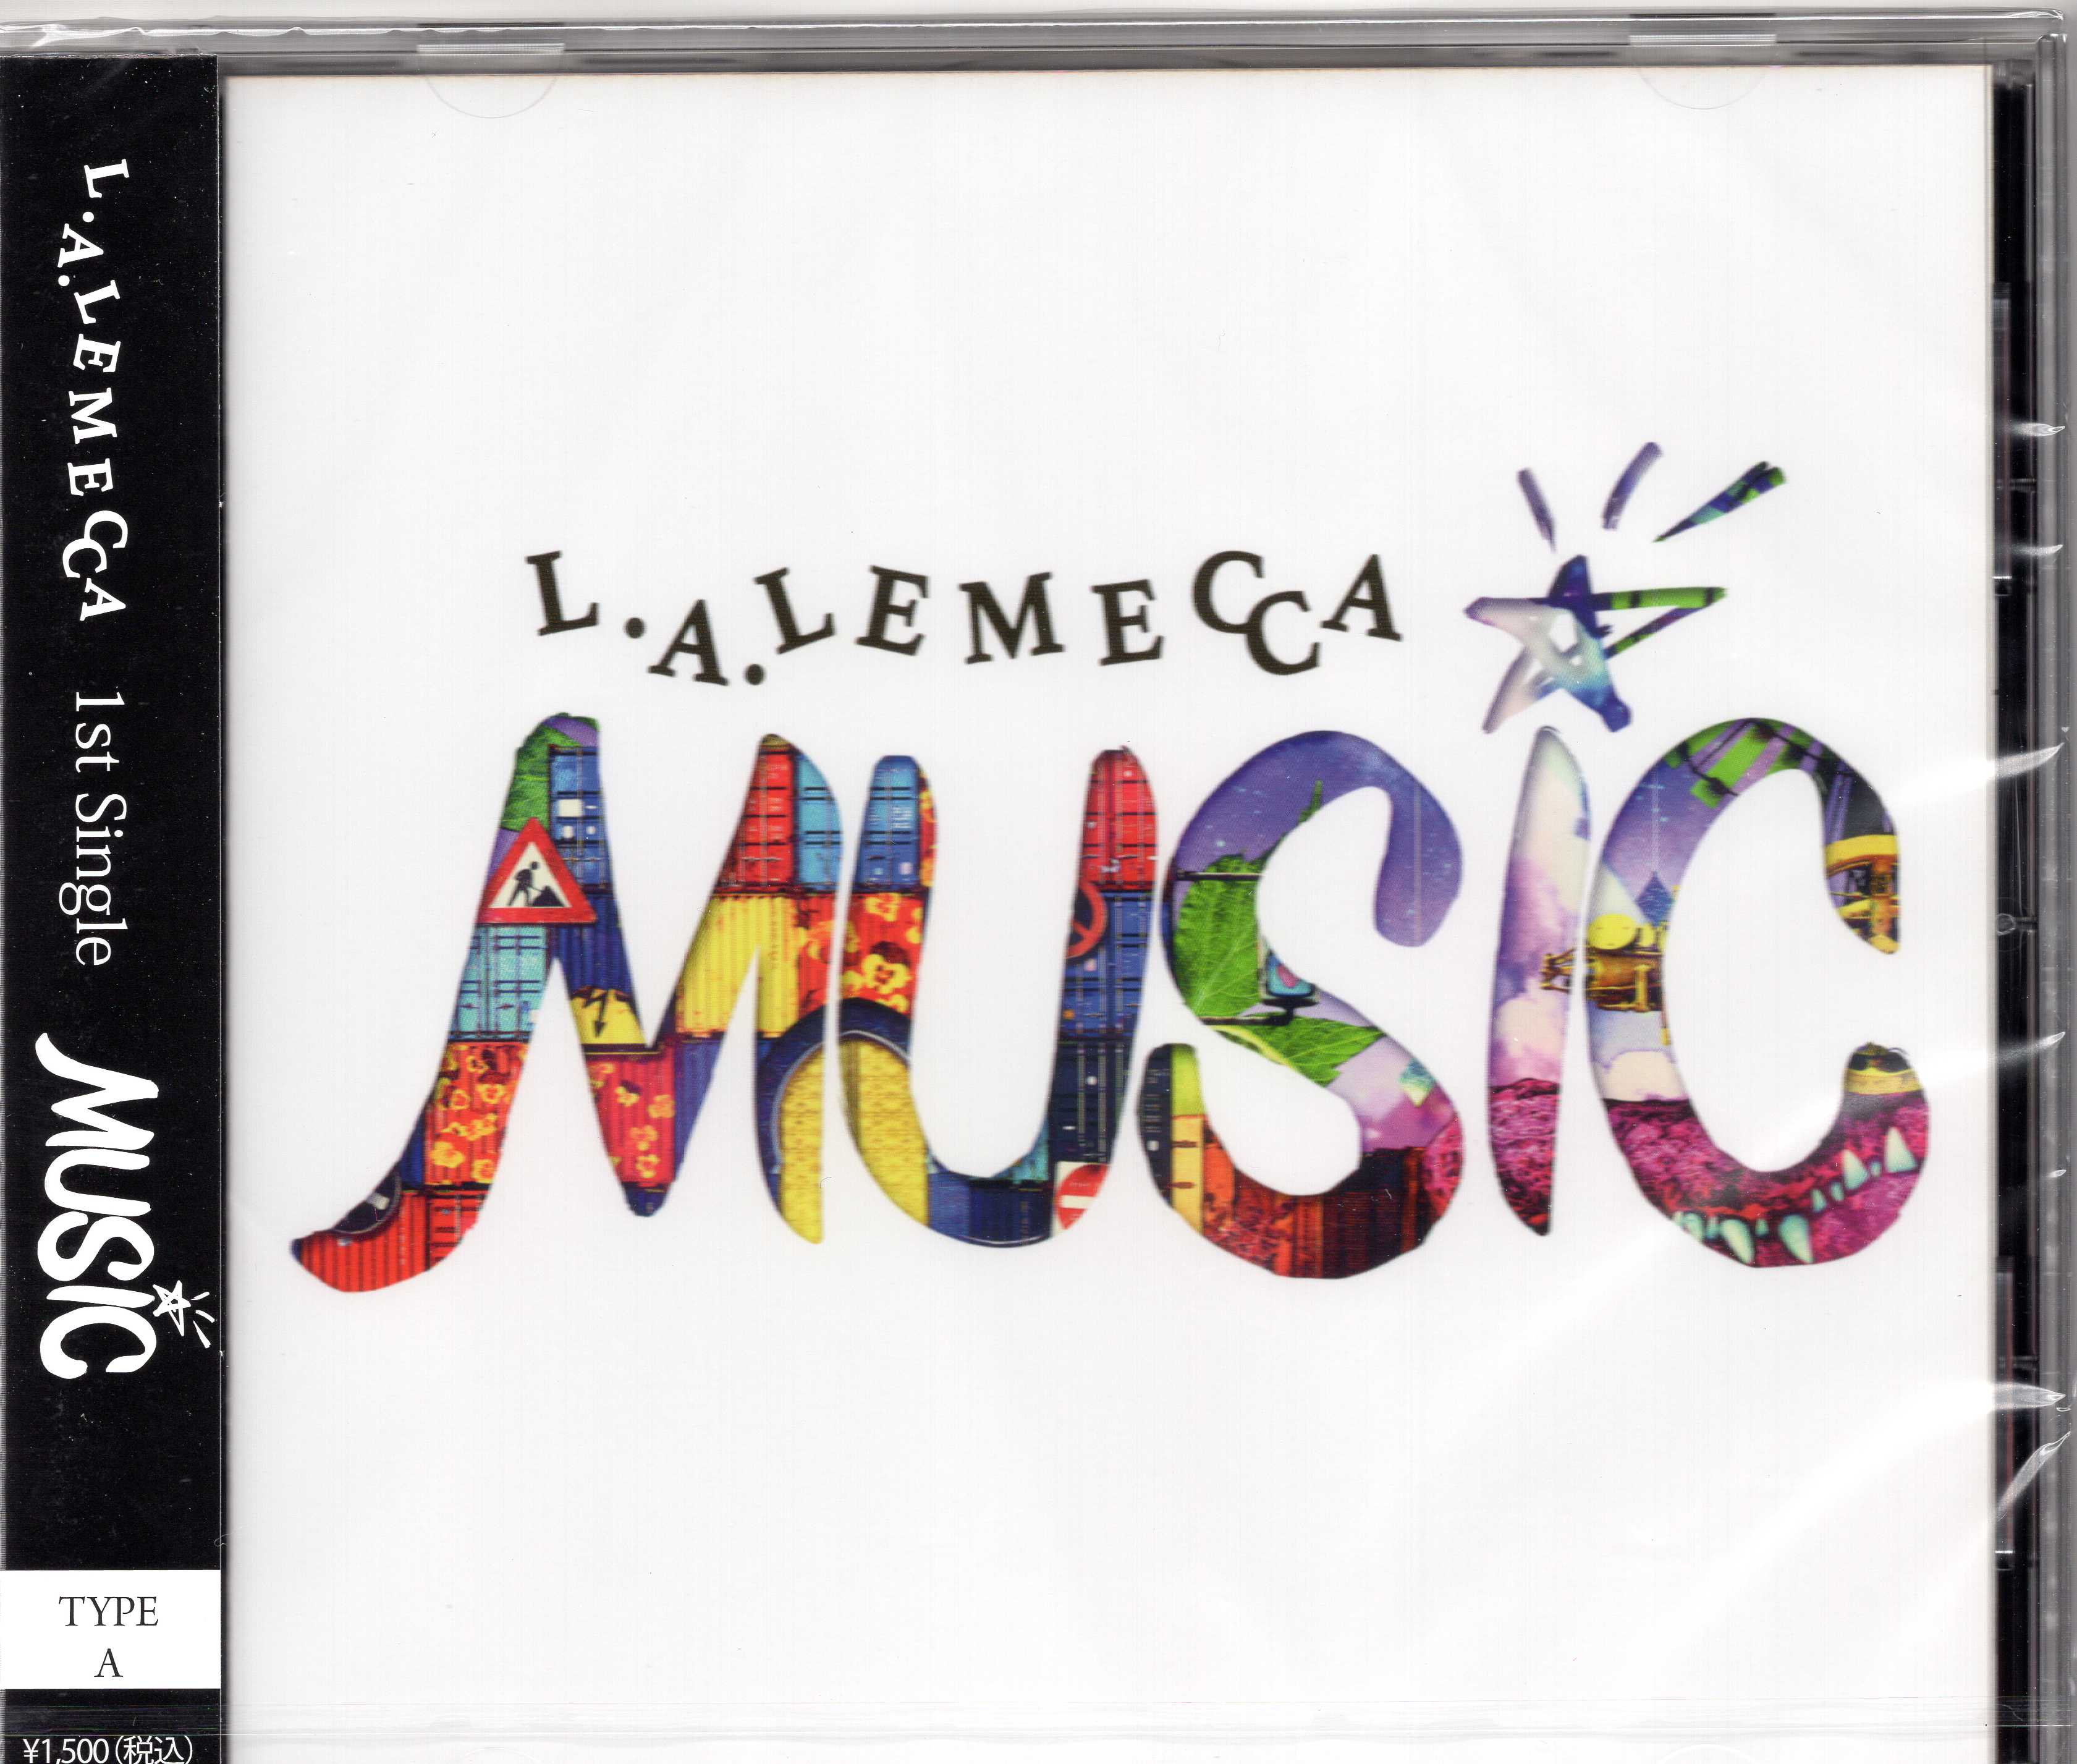 エルエーレメッカ の CD 【A タイプ】MUSIC